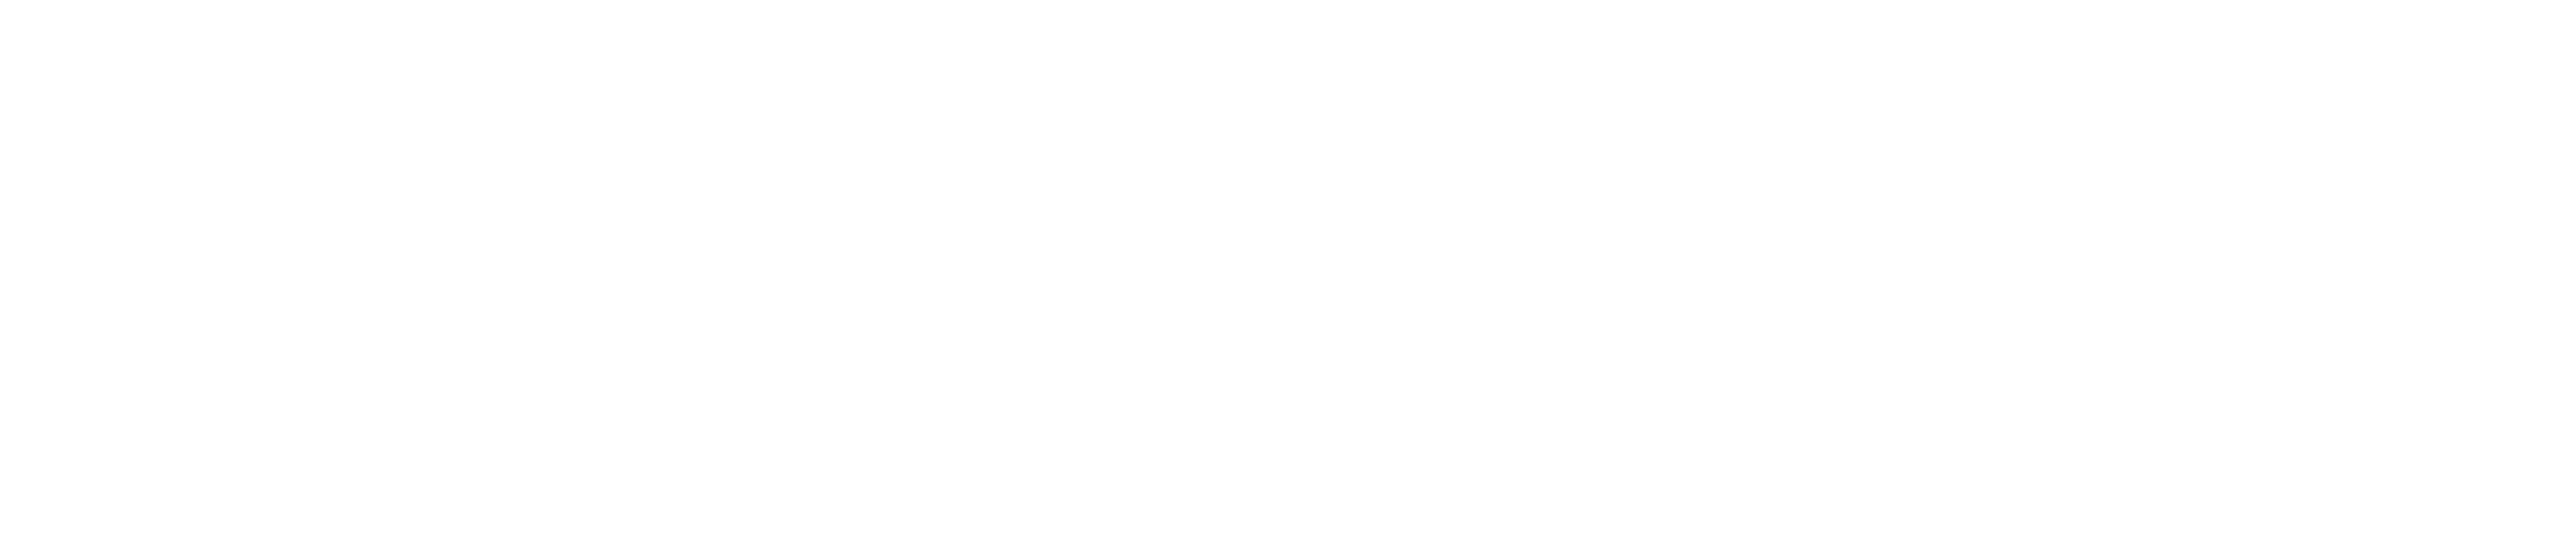 Seanse hvit logo